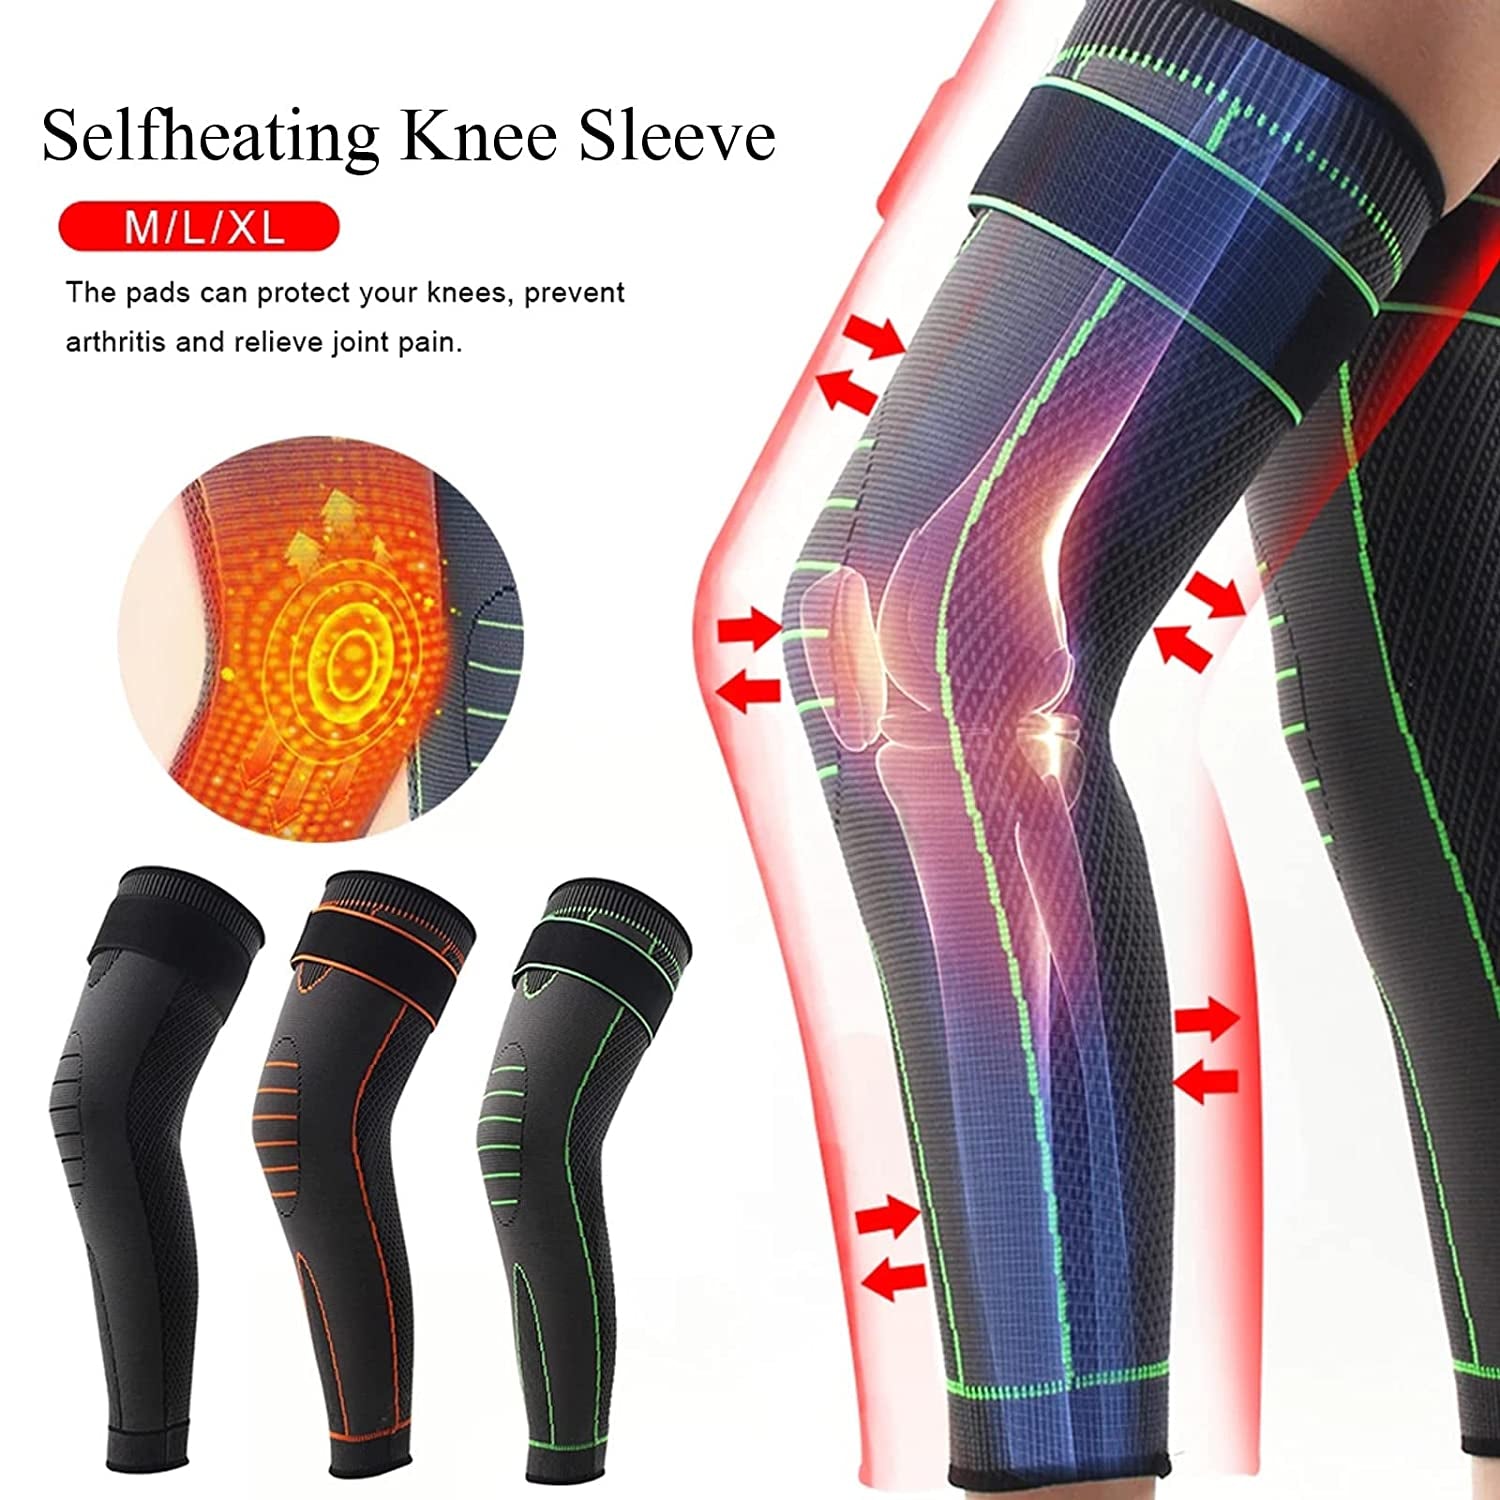 Acupressure self-Heating Shaping Knee Pads 